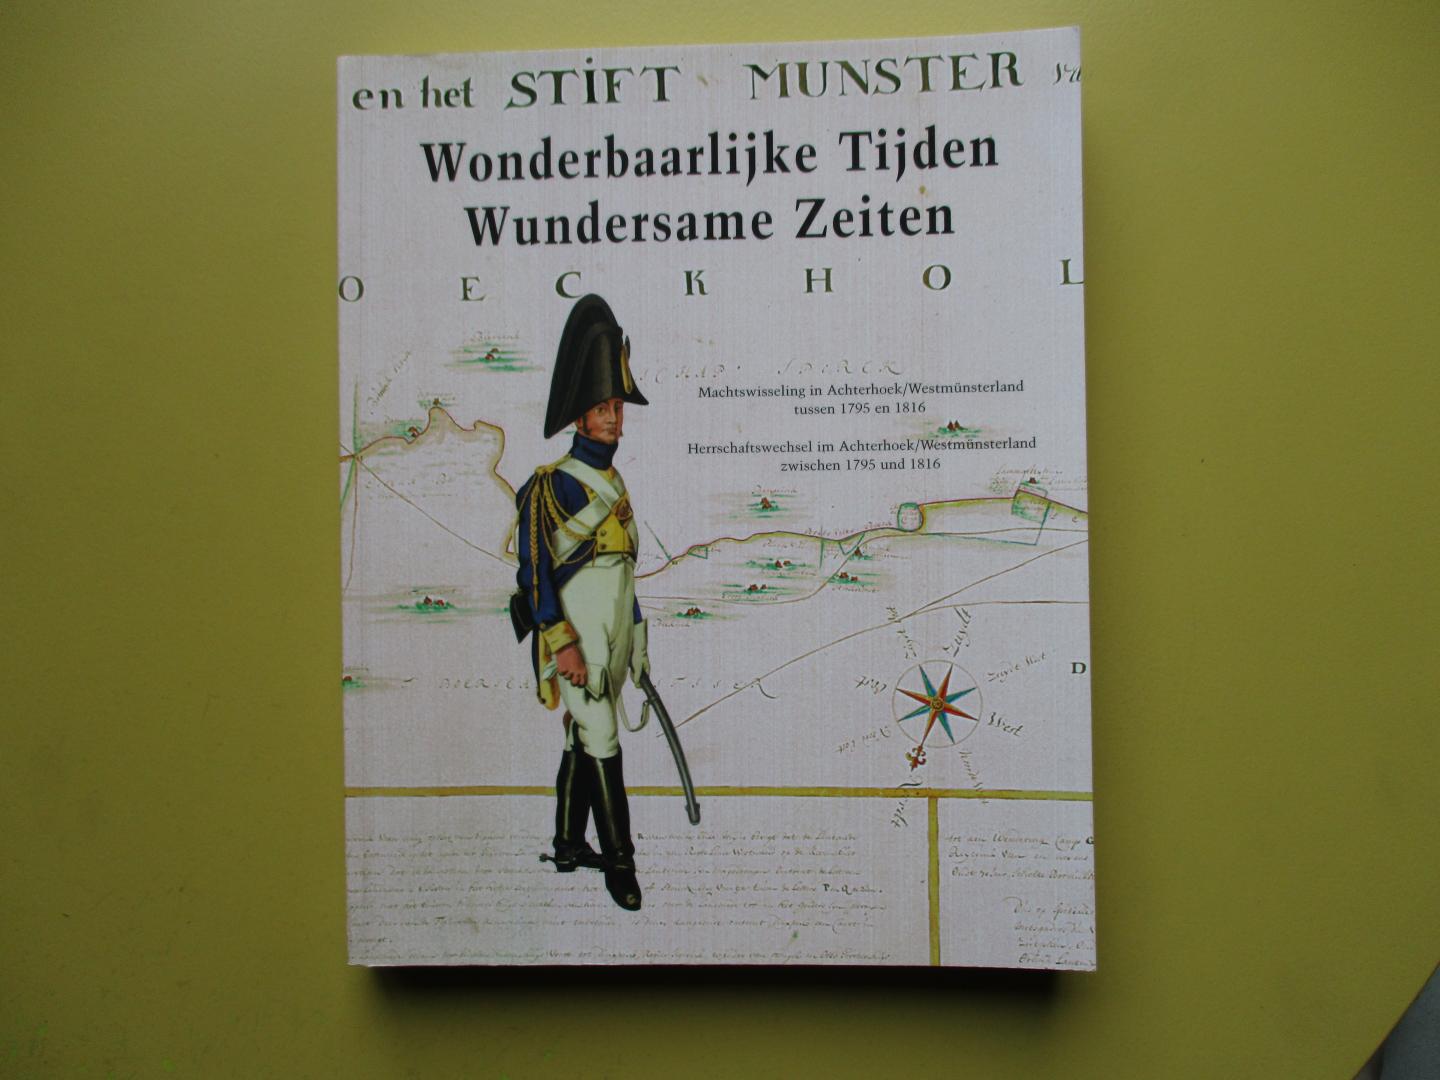 Beukelaer, Hans de / Timothy Sodmann - Wonderbaarlijke tijden.  Machtwisseling in Achterhoek/Westmünsterland tussen 1795 en 1816